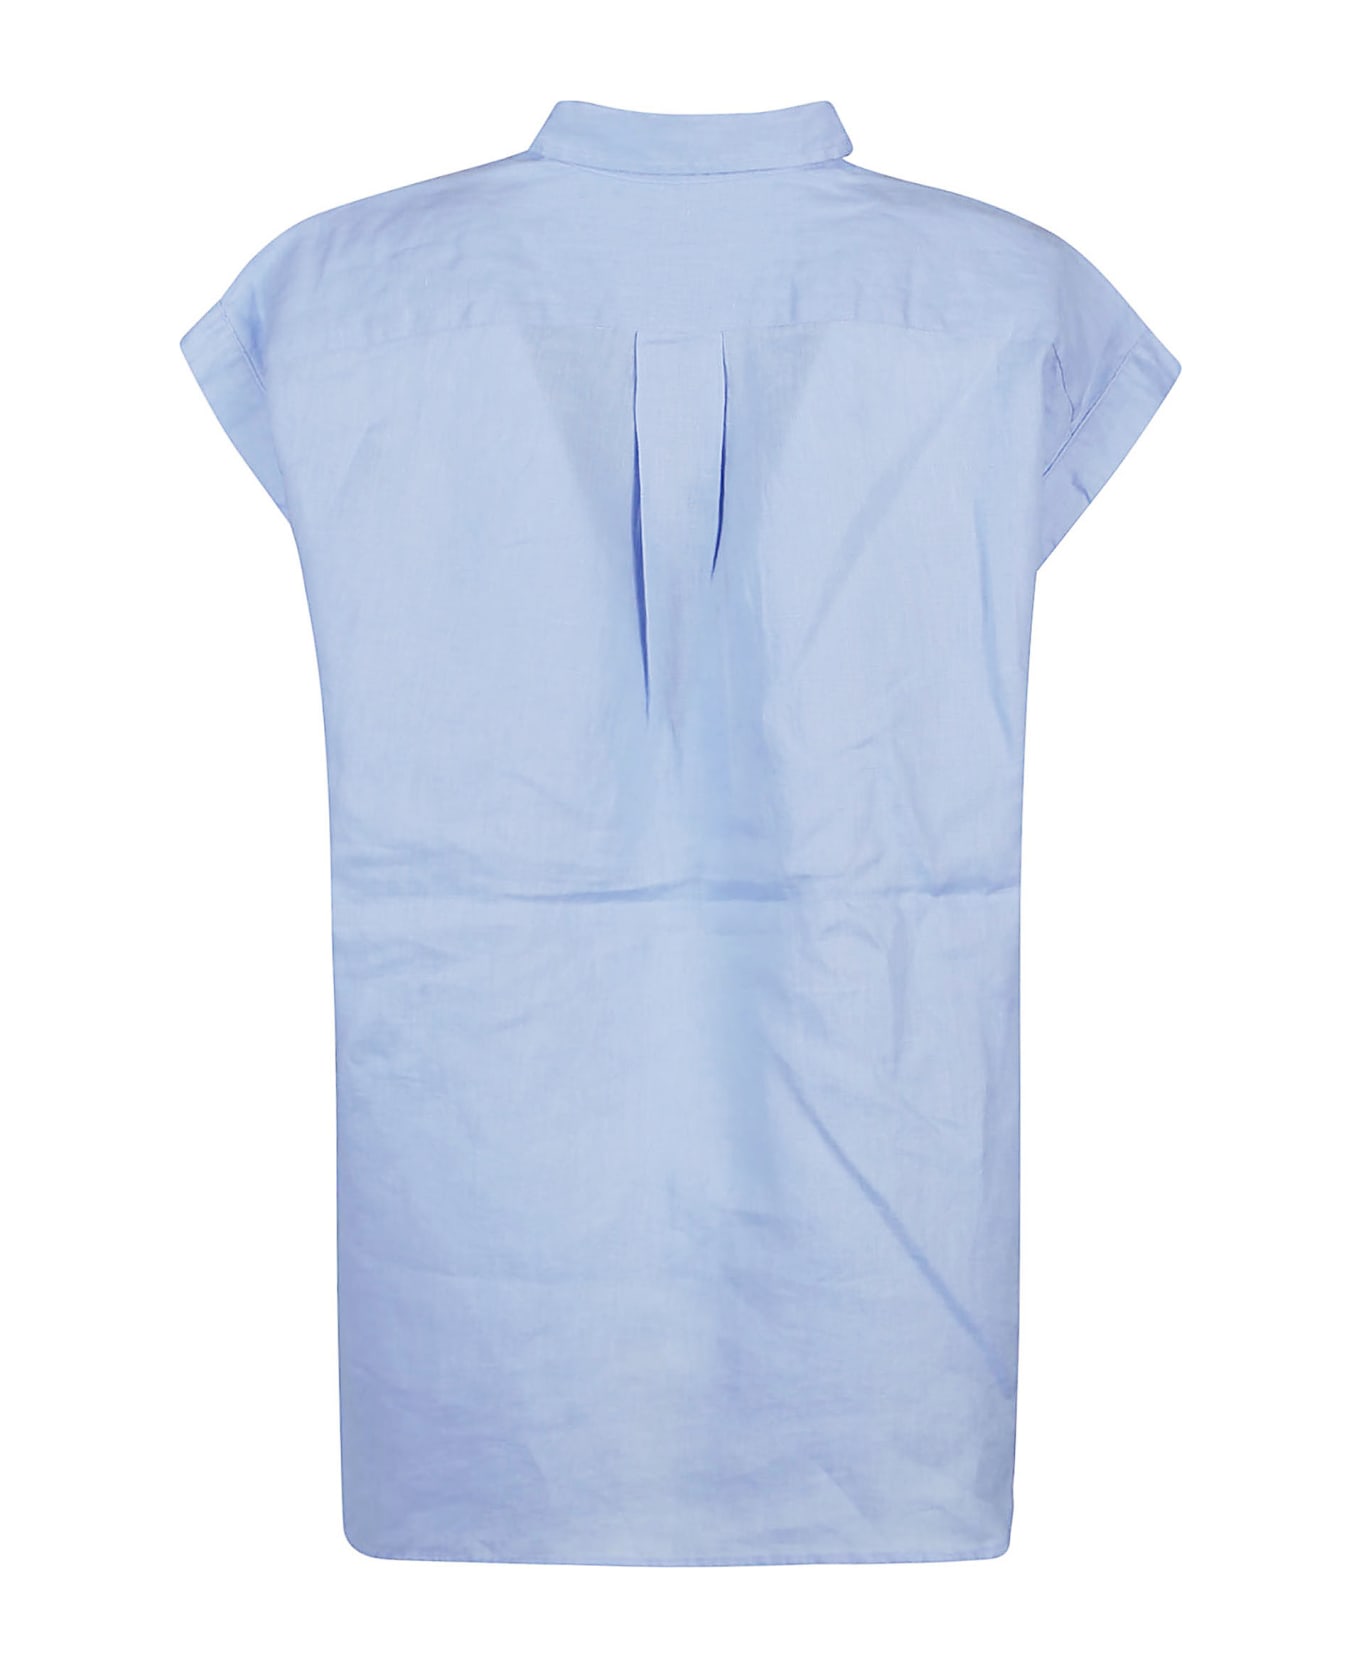 Polo Ralph Lauren Short Sleeve Button Front Shirt - Austin Blue